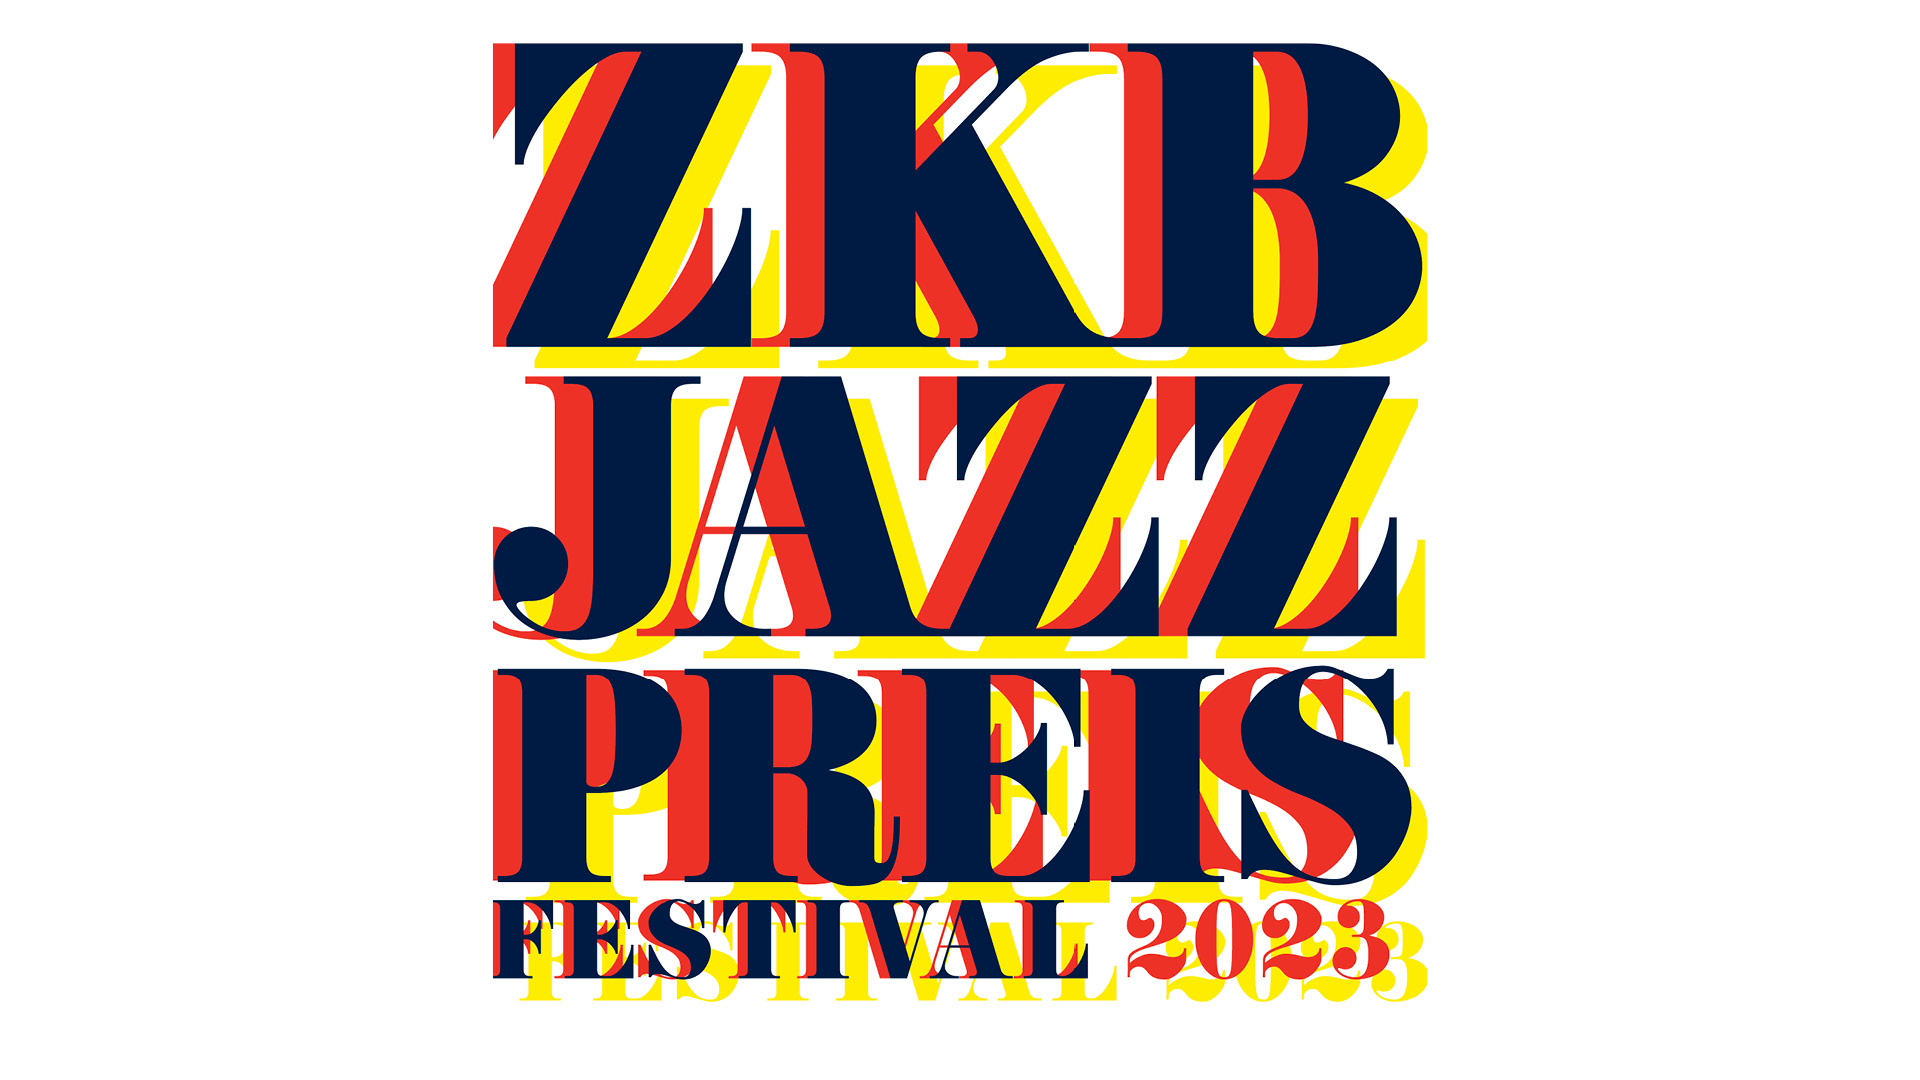 ZKB Jazzpreis @ JazzBaragge Wednesday Jam